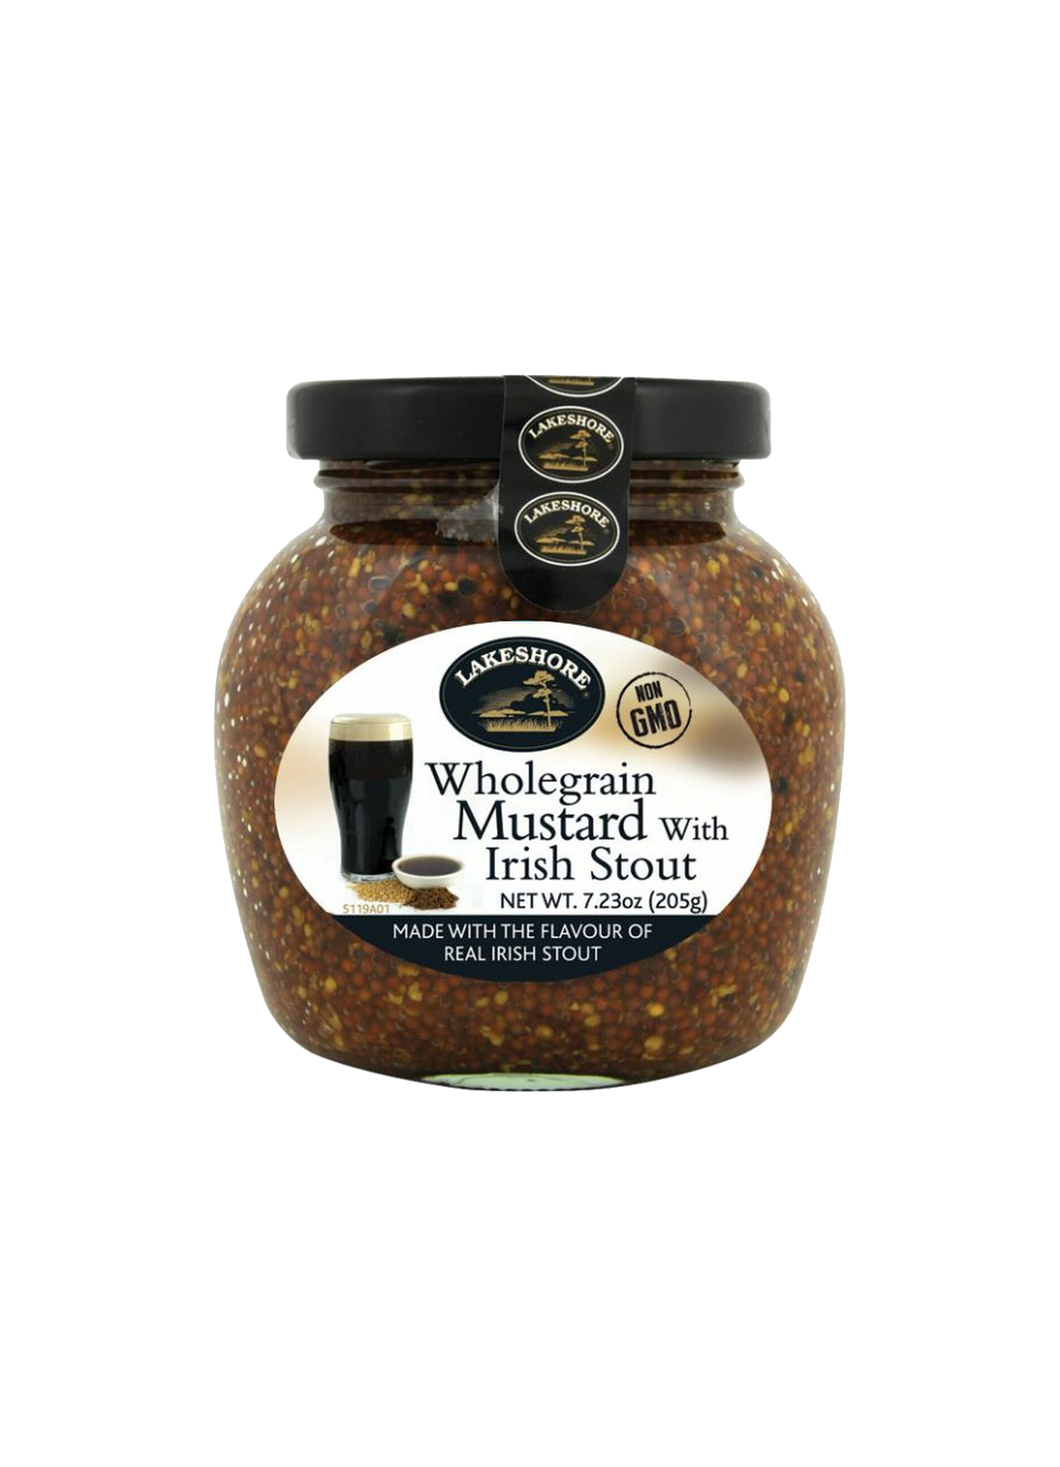 Lakeshore Wholegrain Mustard with Irish Stout 205g